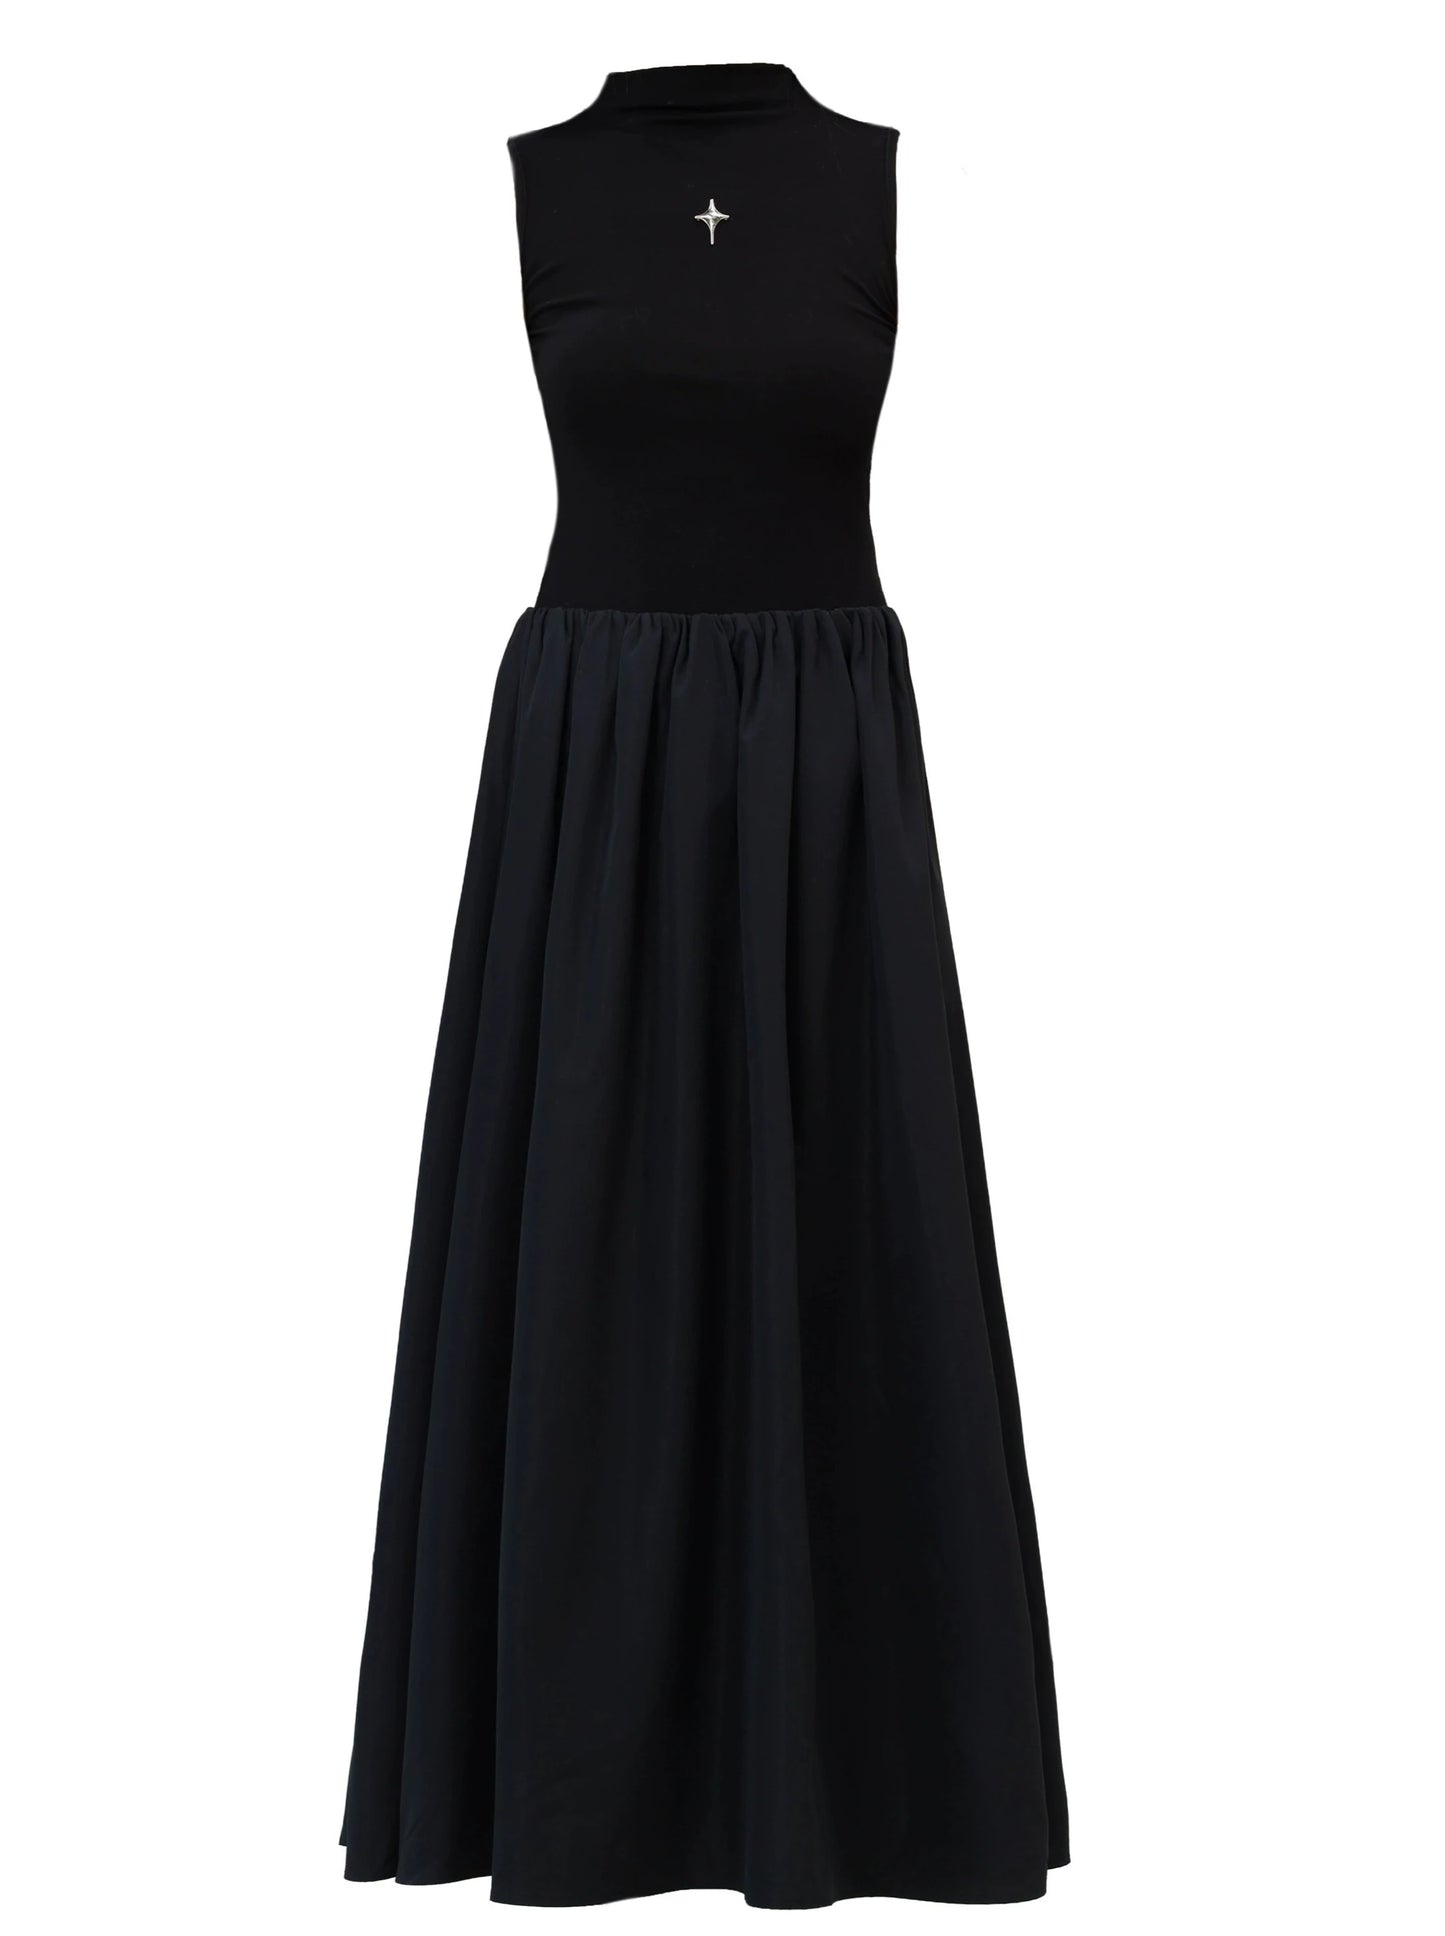 Coolbuti original noir robe slim-fit